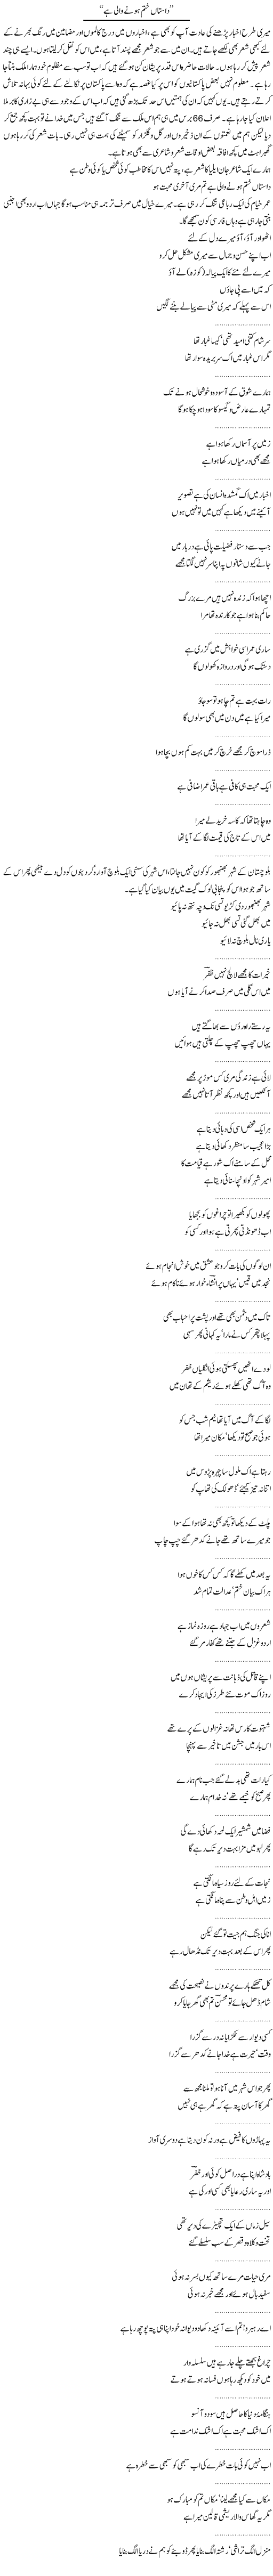 Dastan Khatam Hone Wali Hai | Abdul Qadir Hassan | Daily Urdu Columns